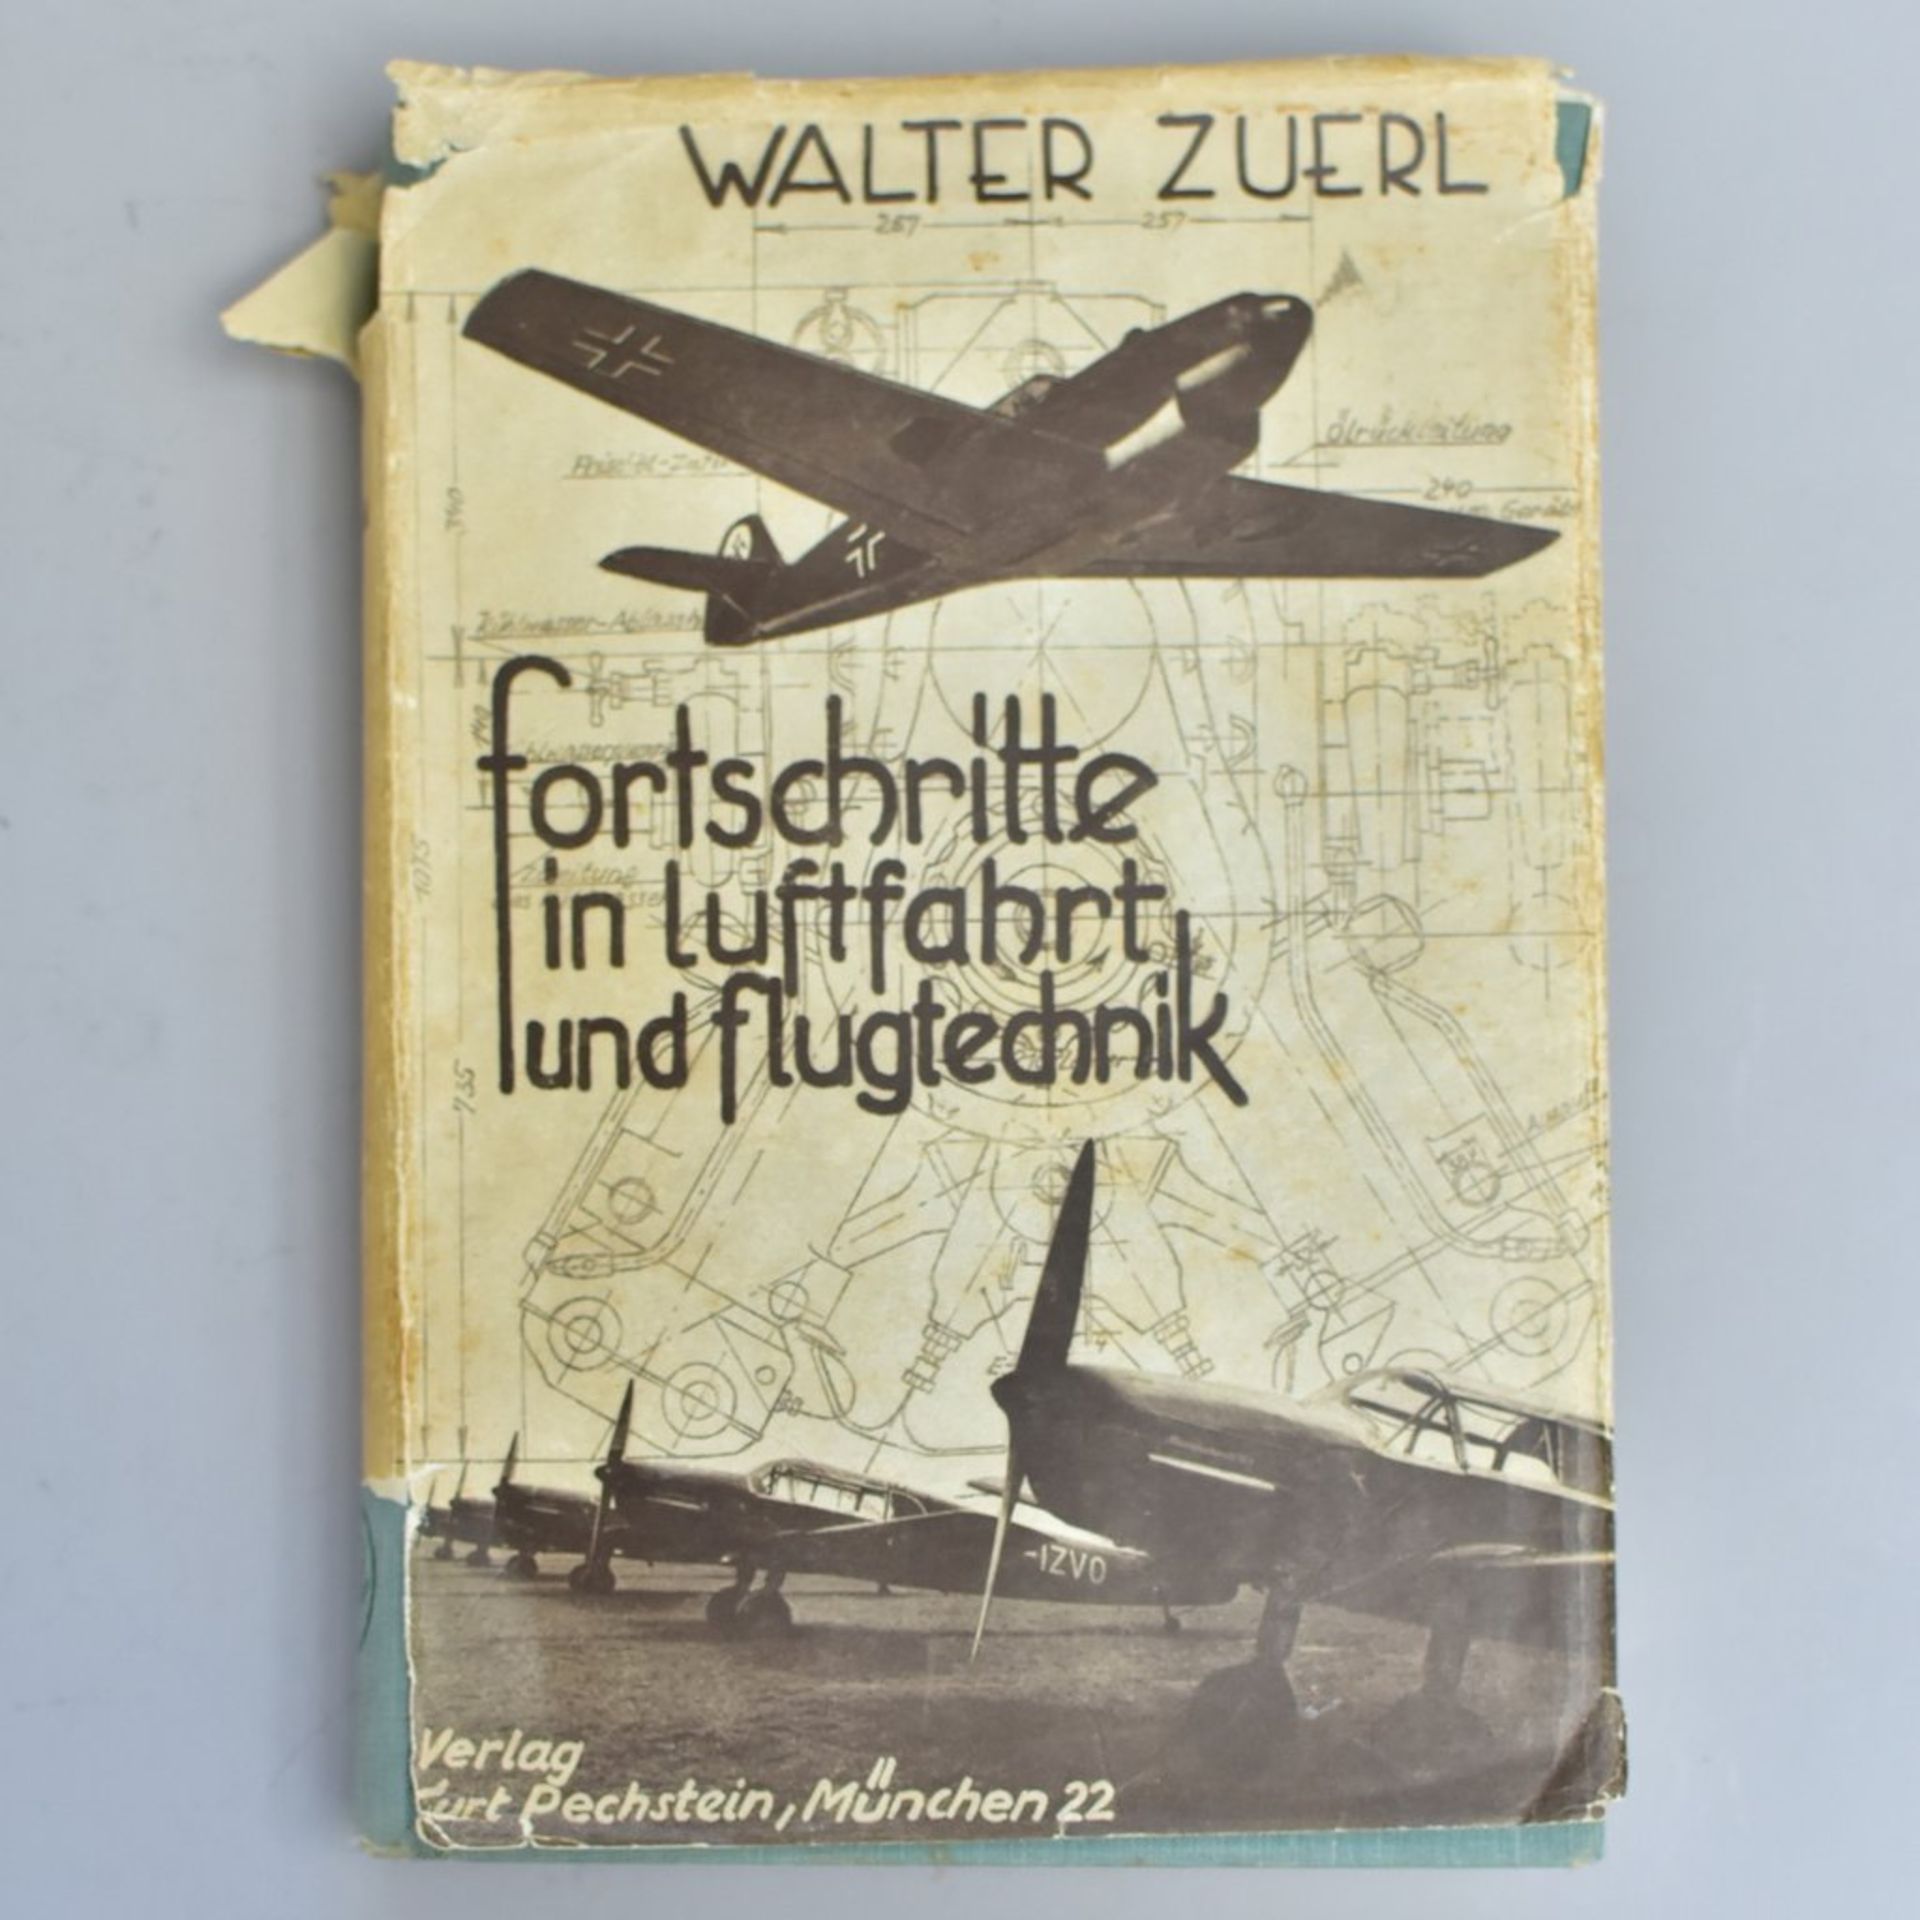 "Fortschritte in Luftfahrt und Flugtechnik" von Walther Zuerl, Verlag K. Rechstein, München 22,